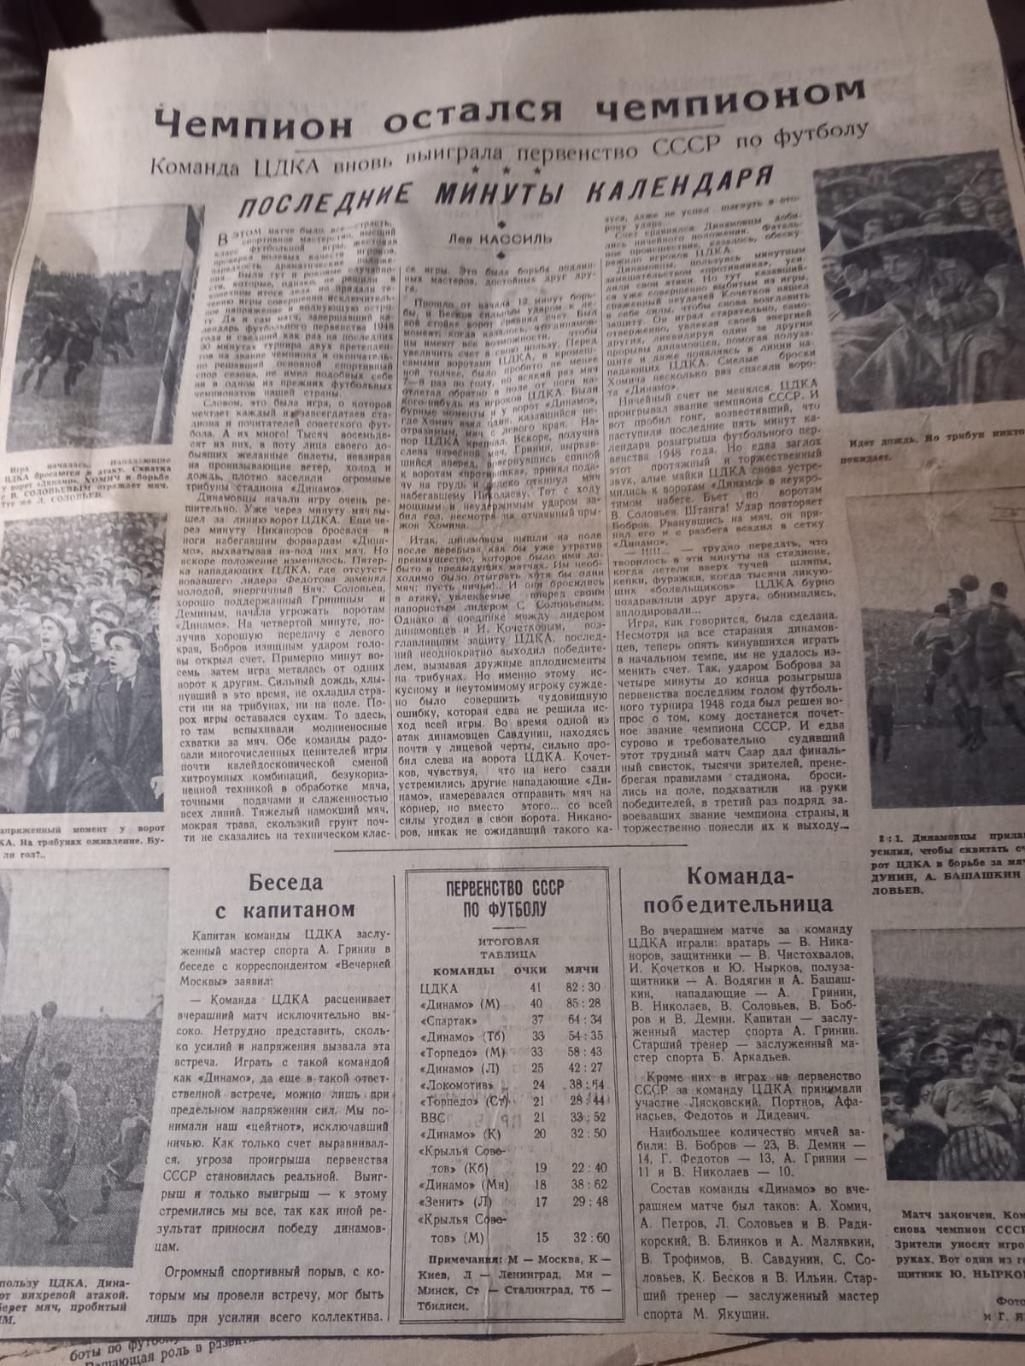 Вырезка из газеты Советский спорт. ЦДКА чемпион СССР 1948